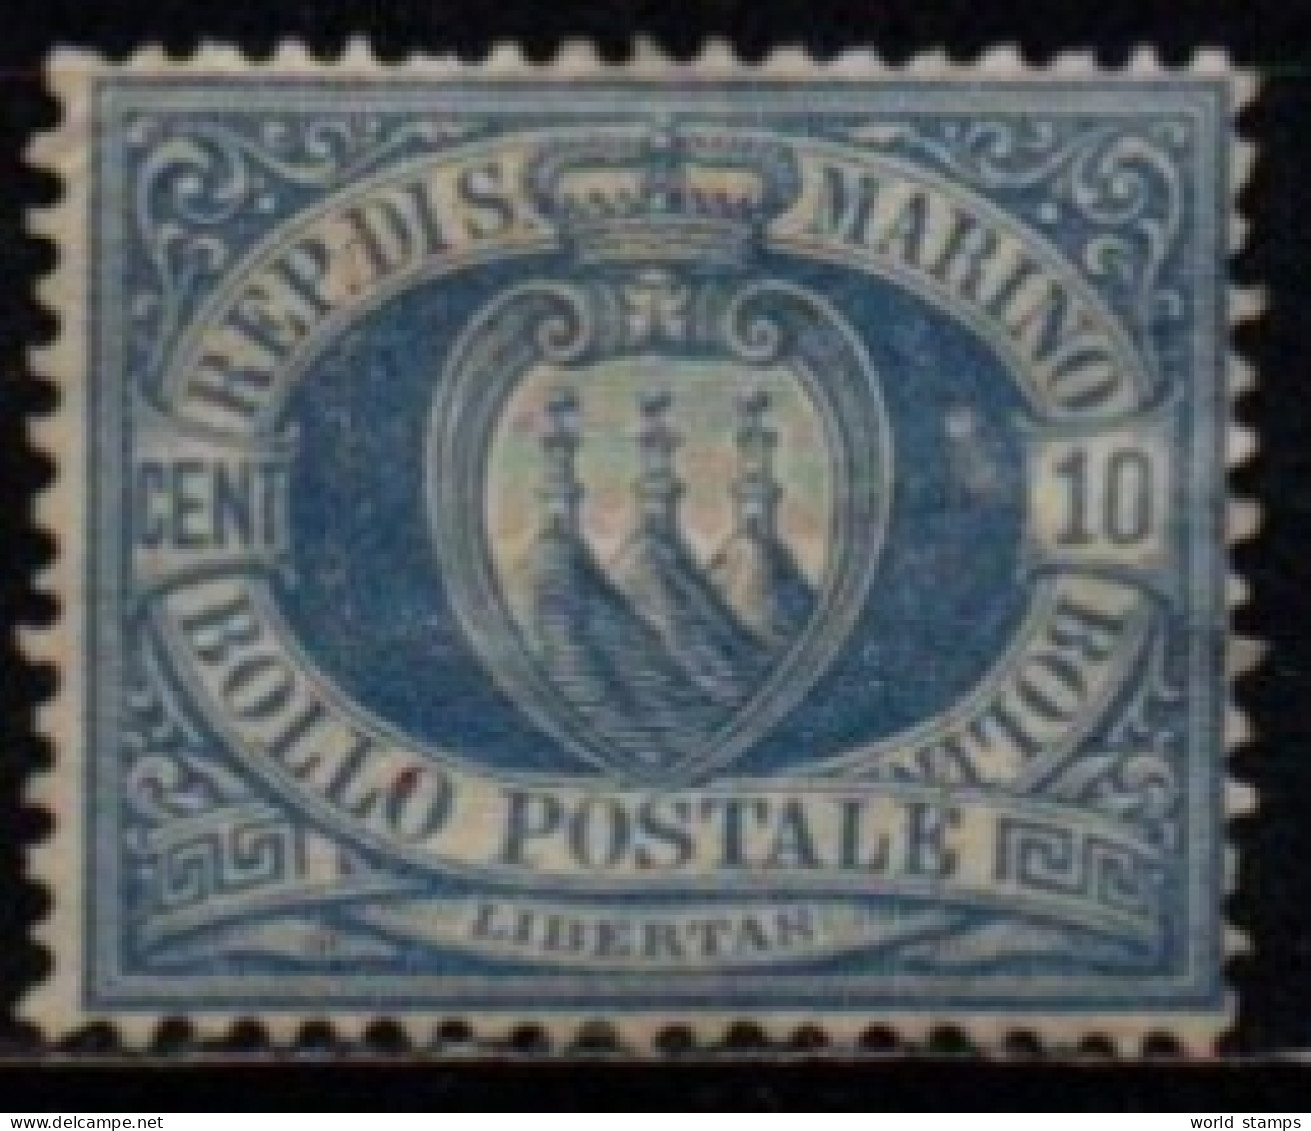 SAINT-MARIN 1877-90 SANS GOMME - Unused Stamps